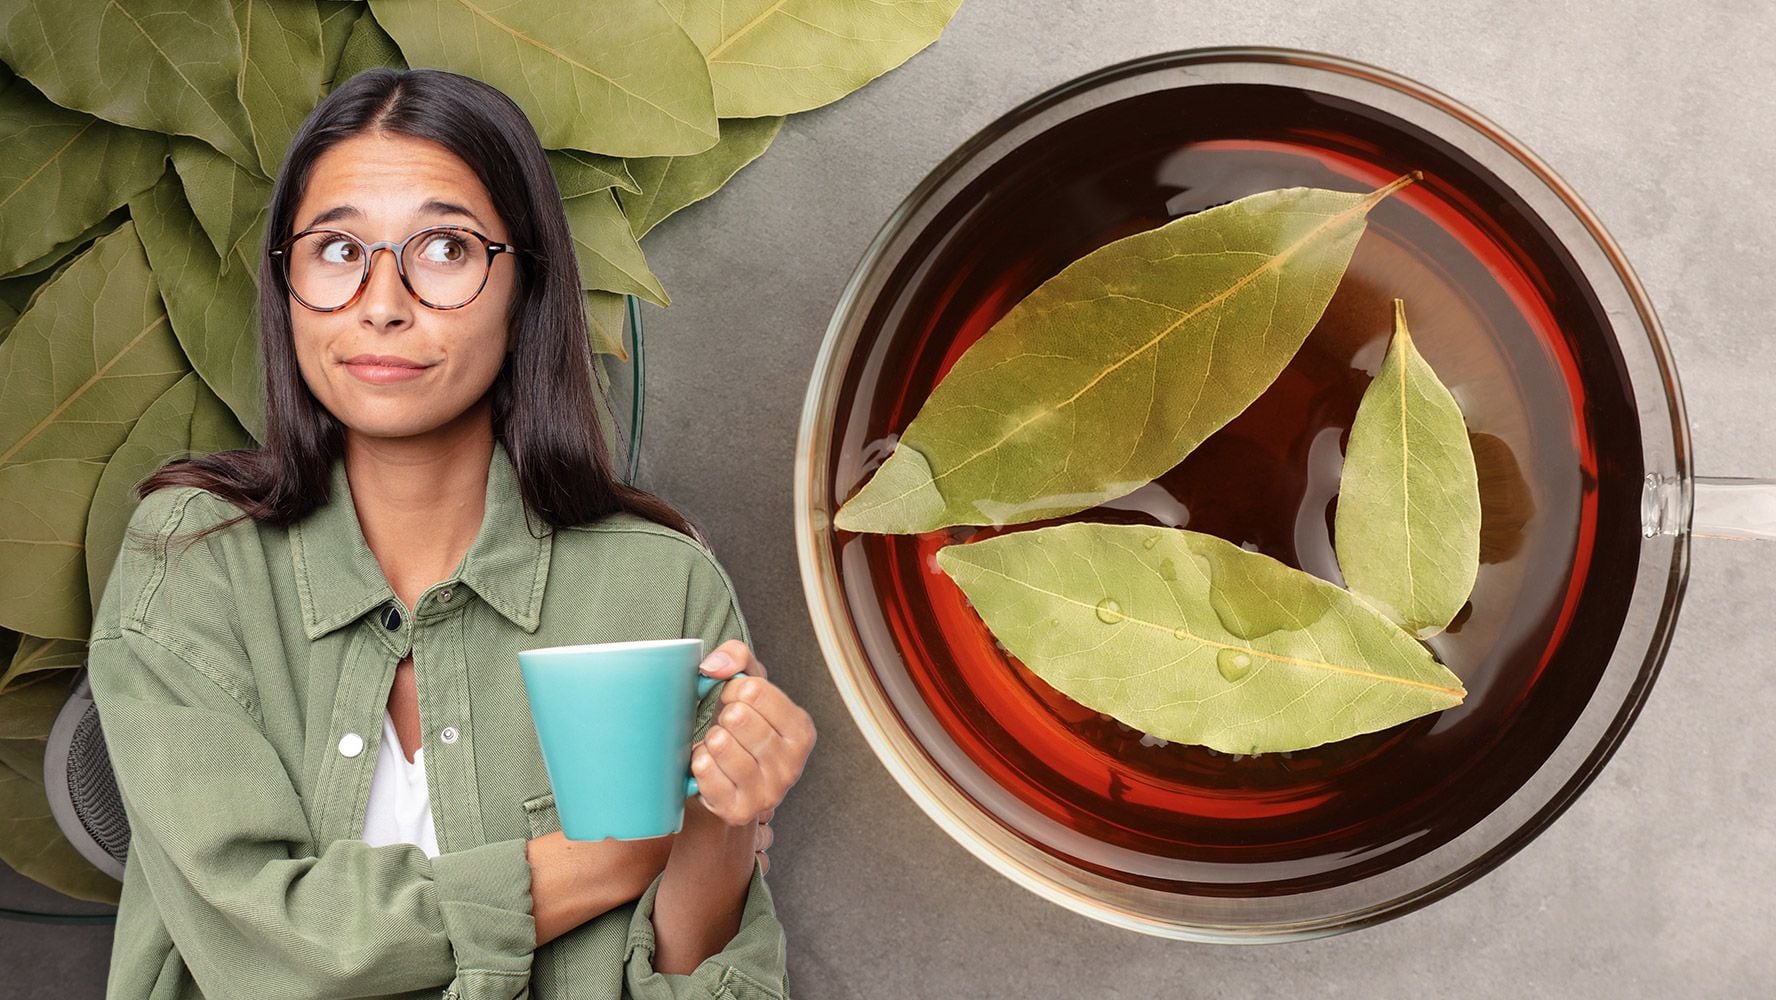 El té de laurel es un remedio casero popular con diversos usos como la digestión. (Foto: Especial / El Financiero).